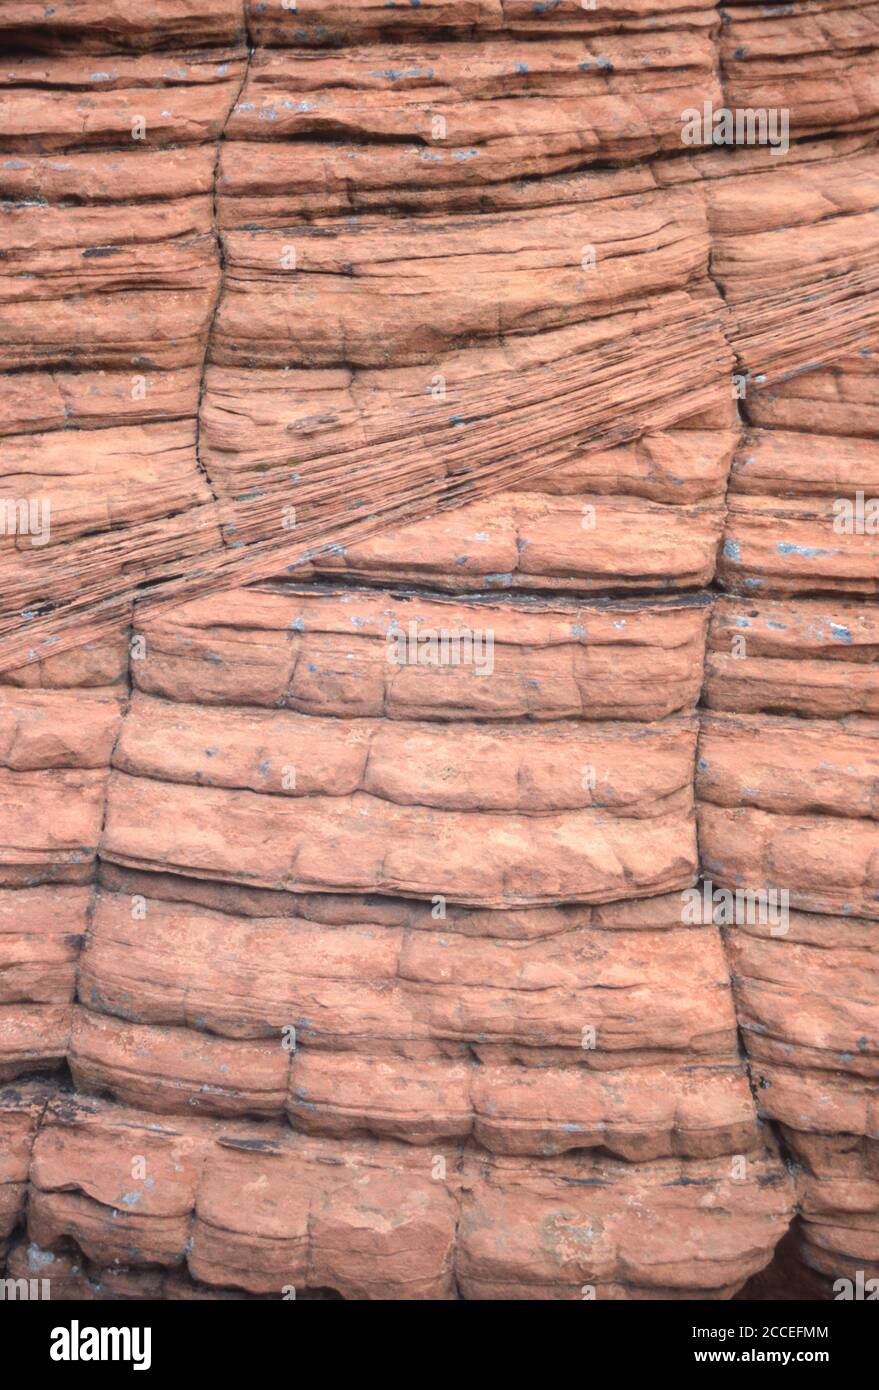 Geologie. Felsschlieren und Banderungen. Bienenstock Formation, Valley of Fire, Nevada, USA. Stockfoto